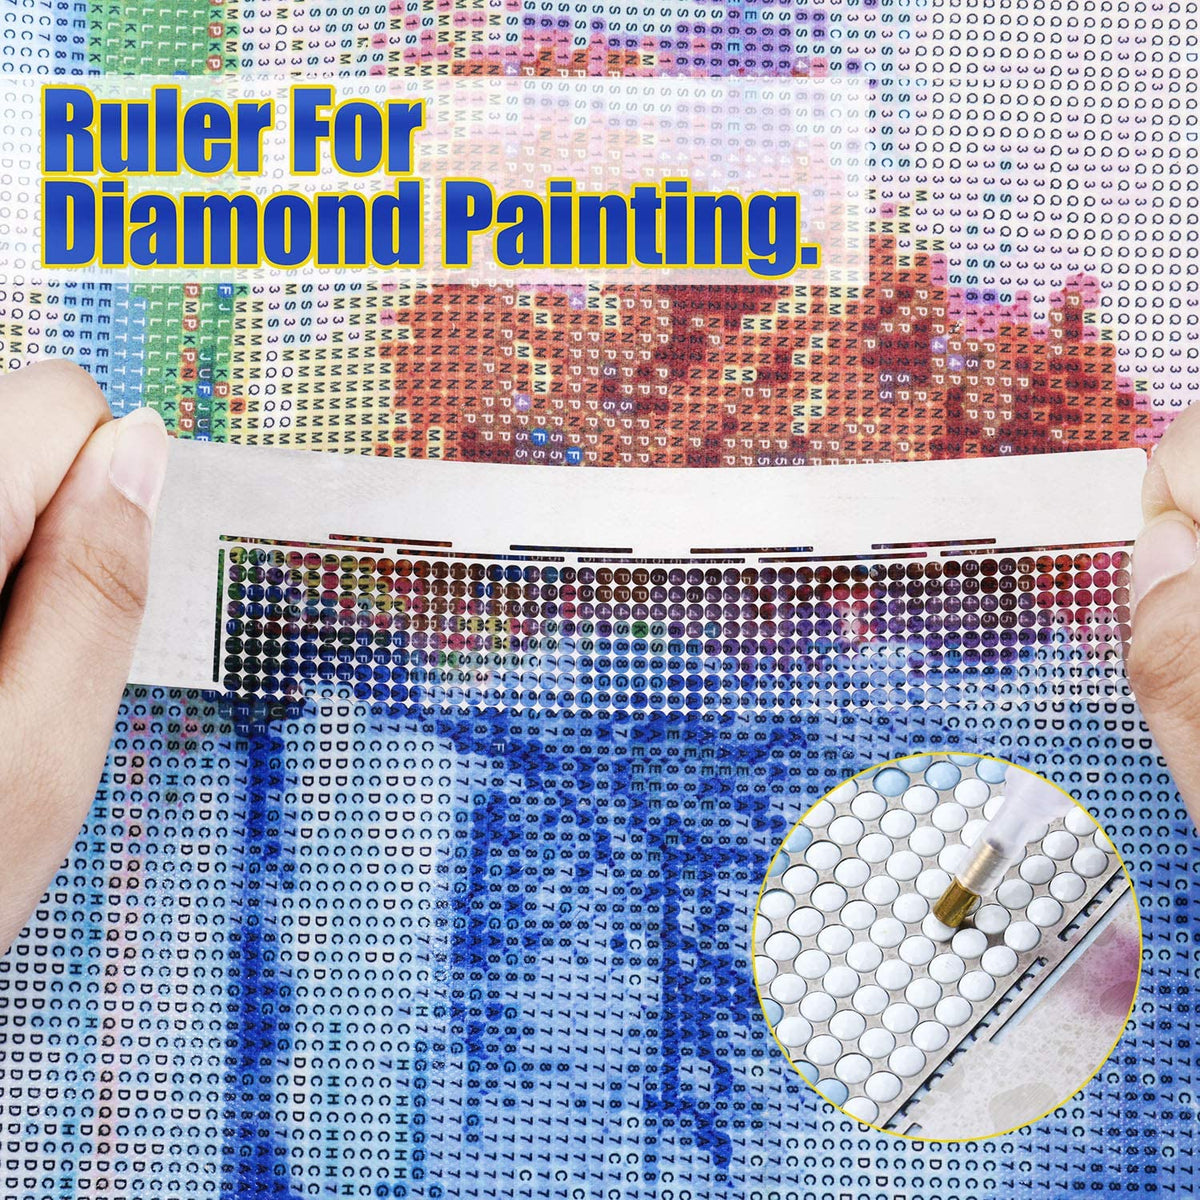 Meprotal 2Pcs Diamond Painting Ruler Tool and 1 Pcs Kit 1